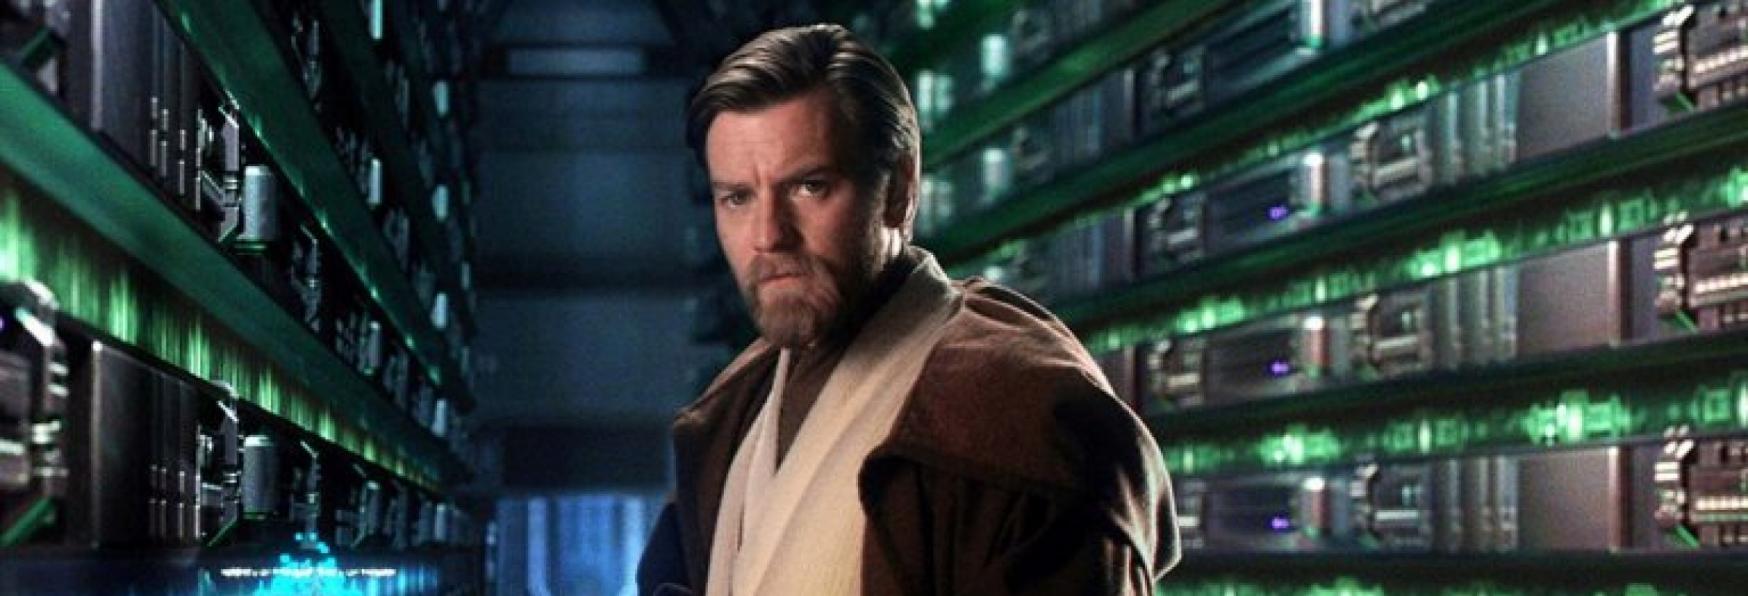 Star Wars: Kenobi - Iniziate le Riprese dello Spin-off con Ewan McGregor